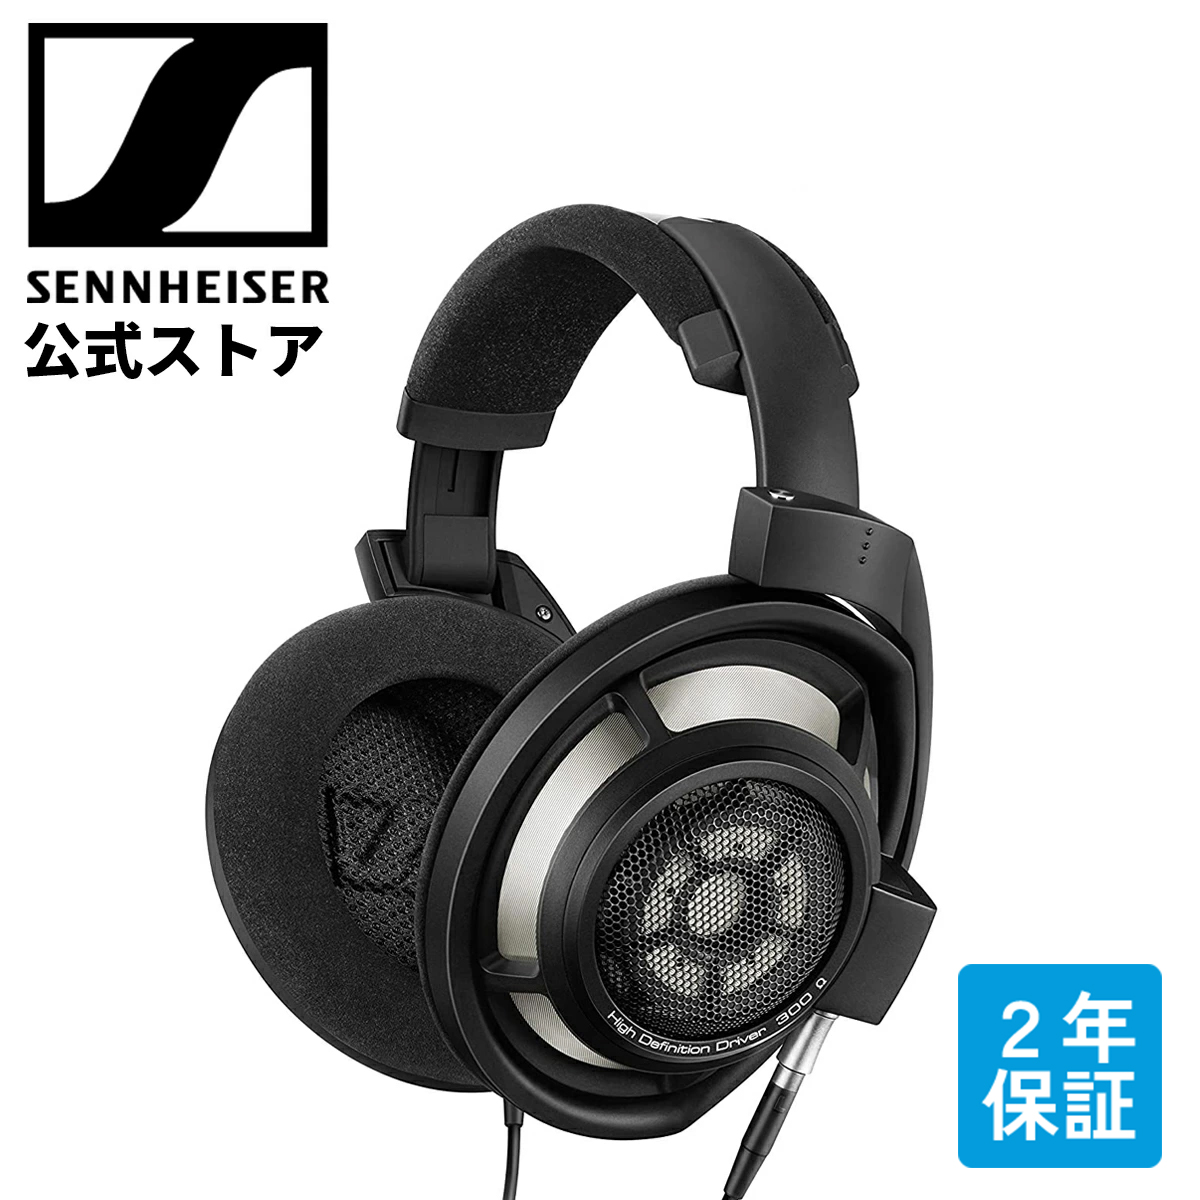 販売安い◇美品 SENNHEISER ゼンハイザー HD820 格安1円START!!この機会にいかがでしょうか!! J413114 BL 関西発送 ゼンハイザー